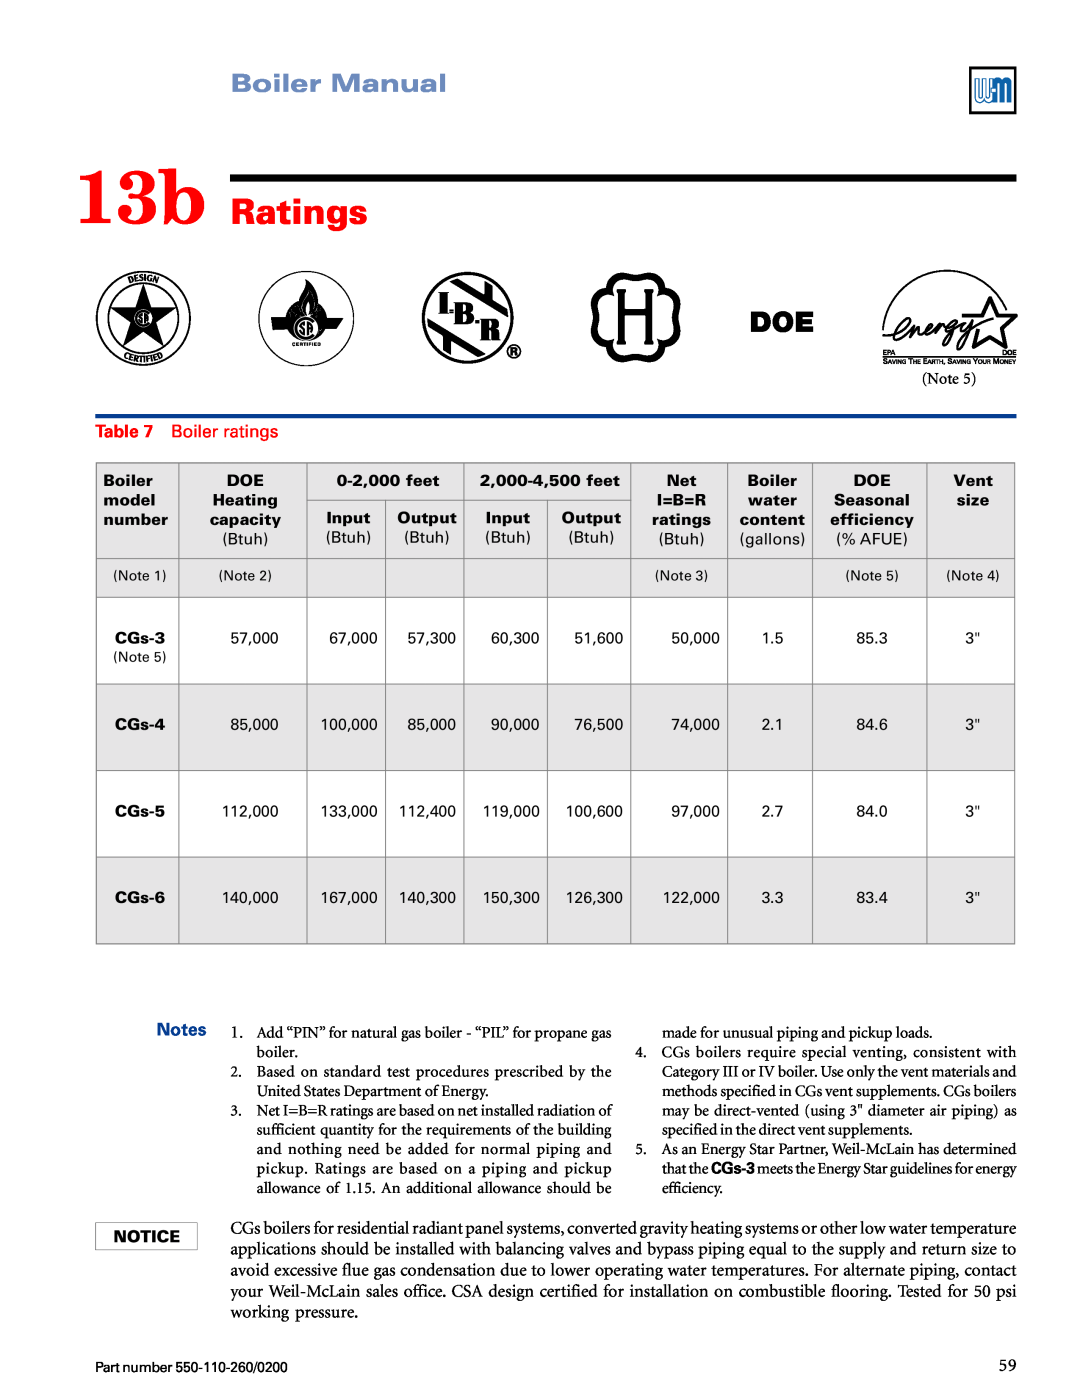 Weil-McLain 550-110-260/02002 manual 13b Ratings, Boiler Manual, Table, Boiler ratings 